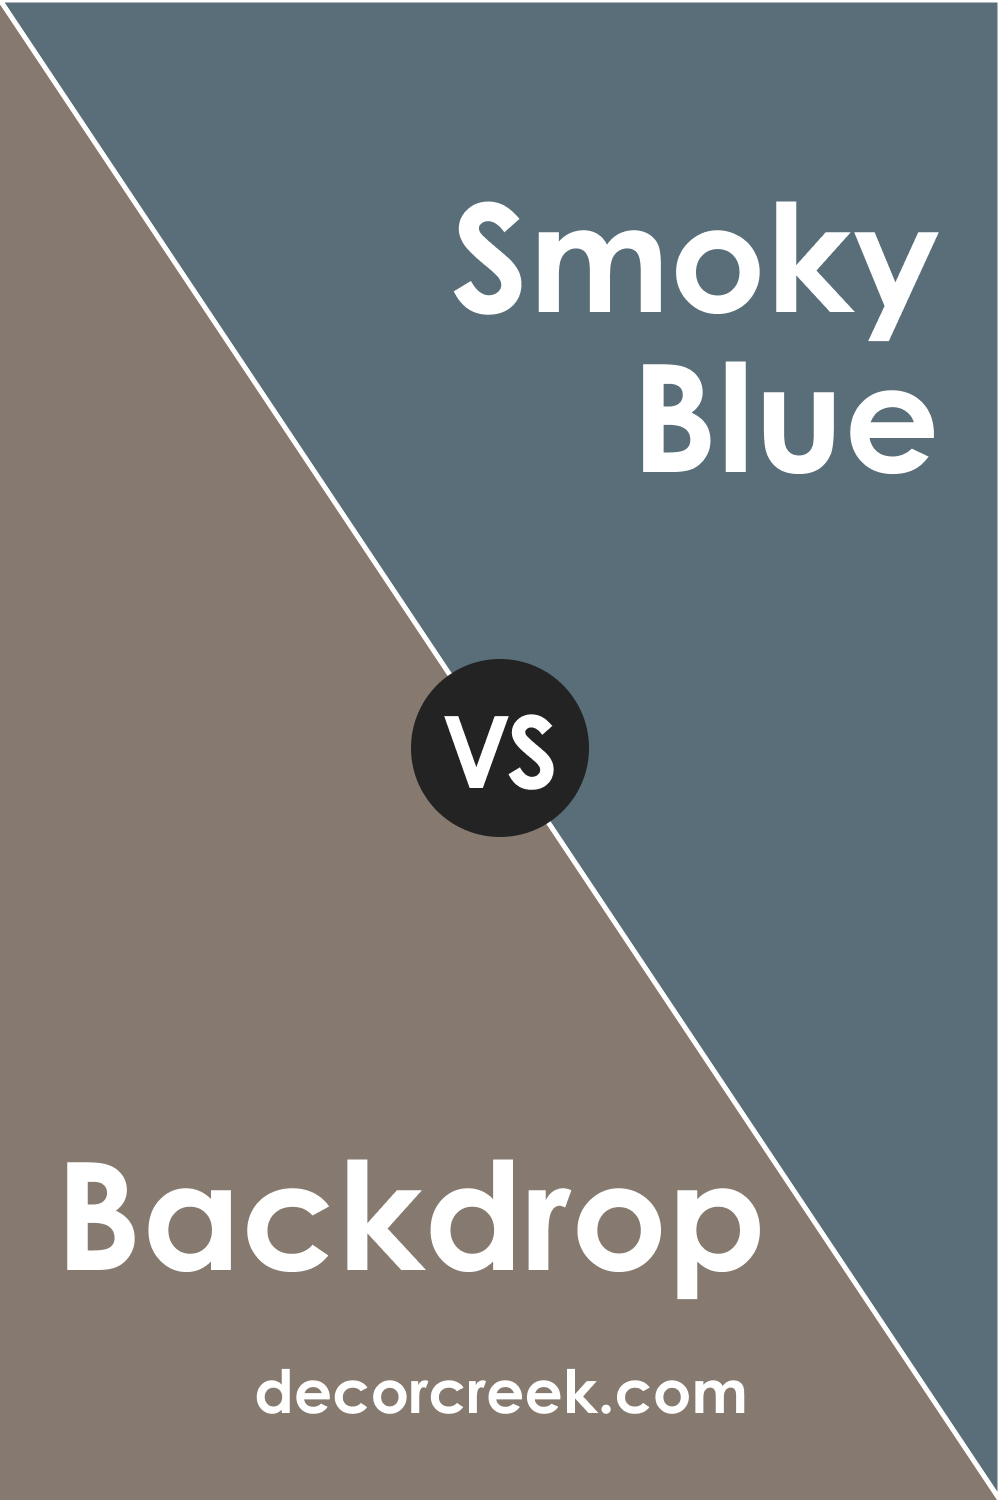 SW 7025 Backdrop vs. SW 7604 Smoky Blue